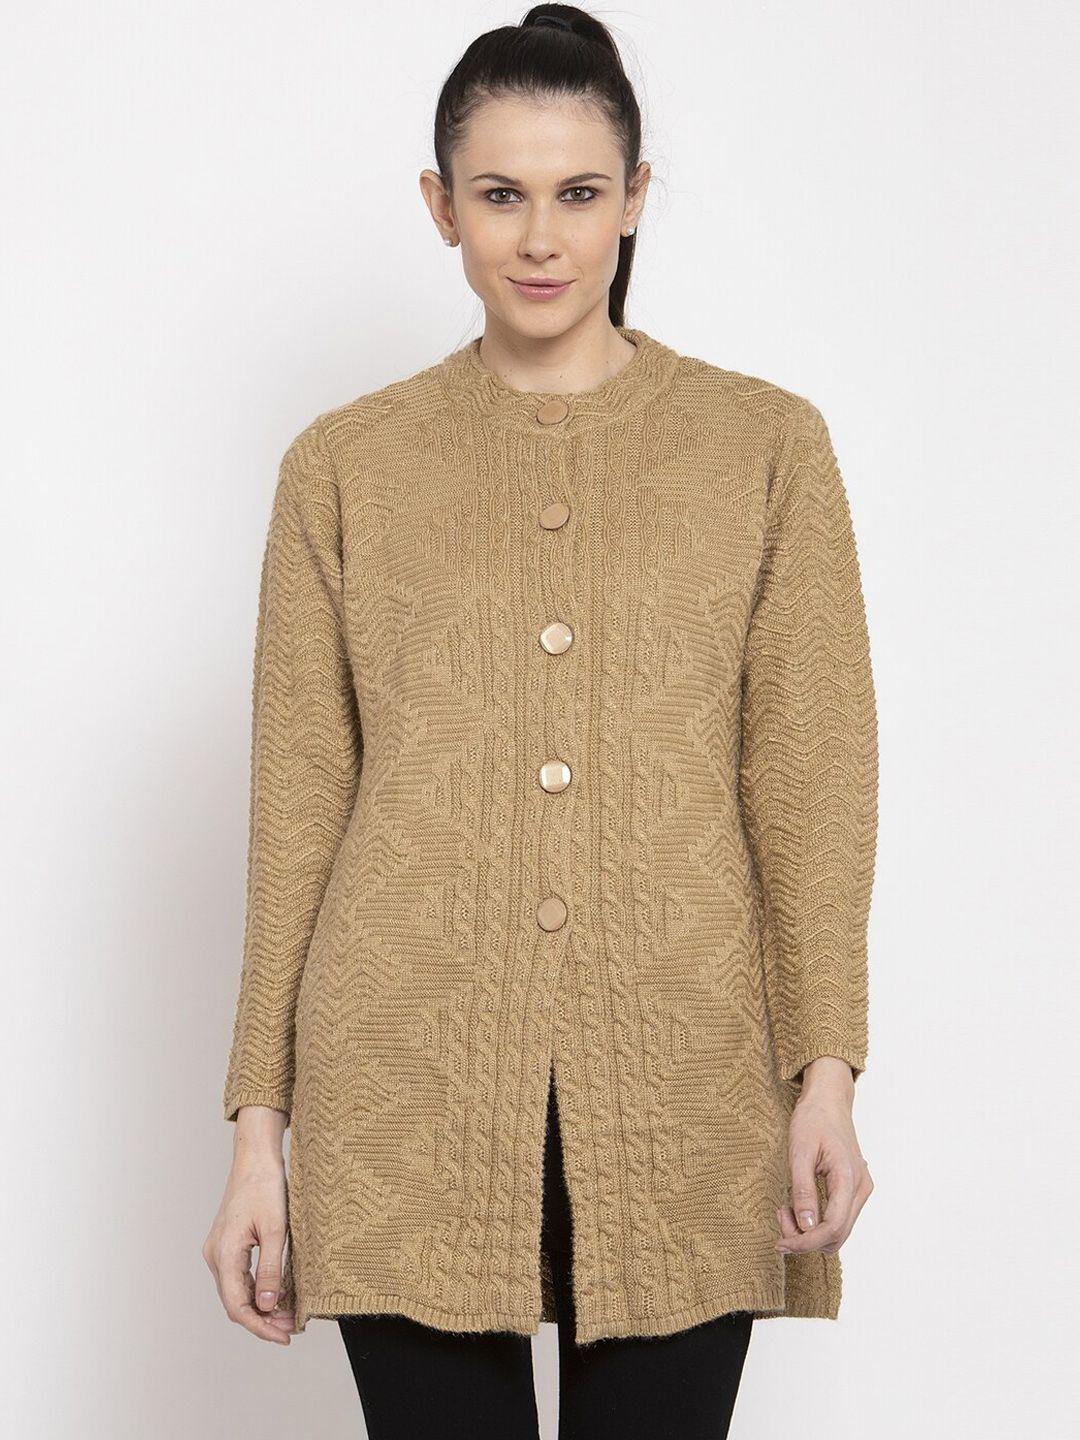 vanya women brown self design front-open sweater